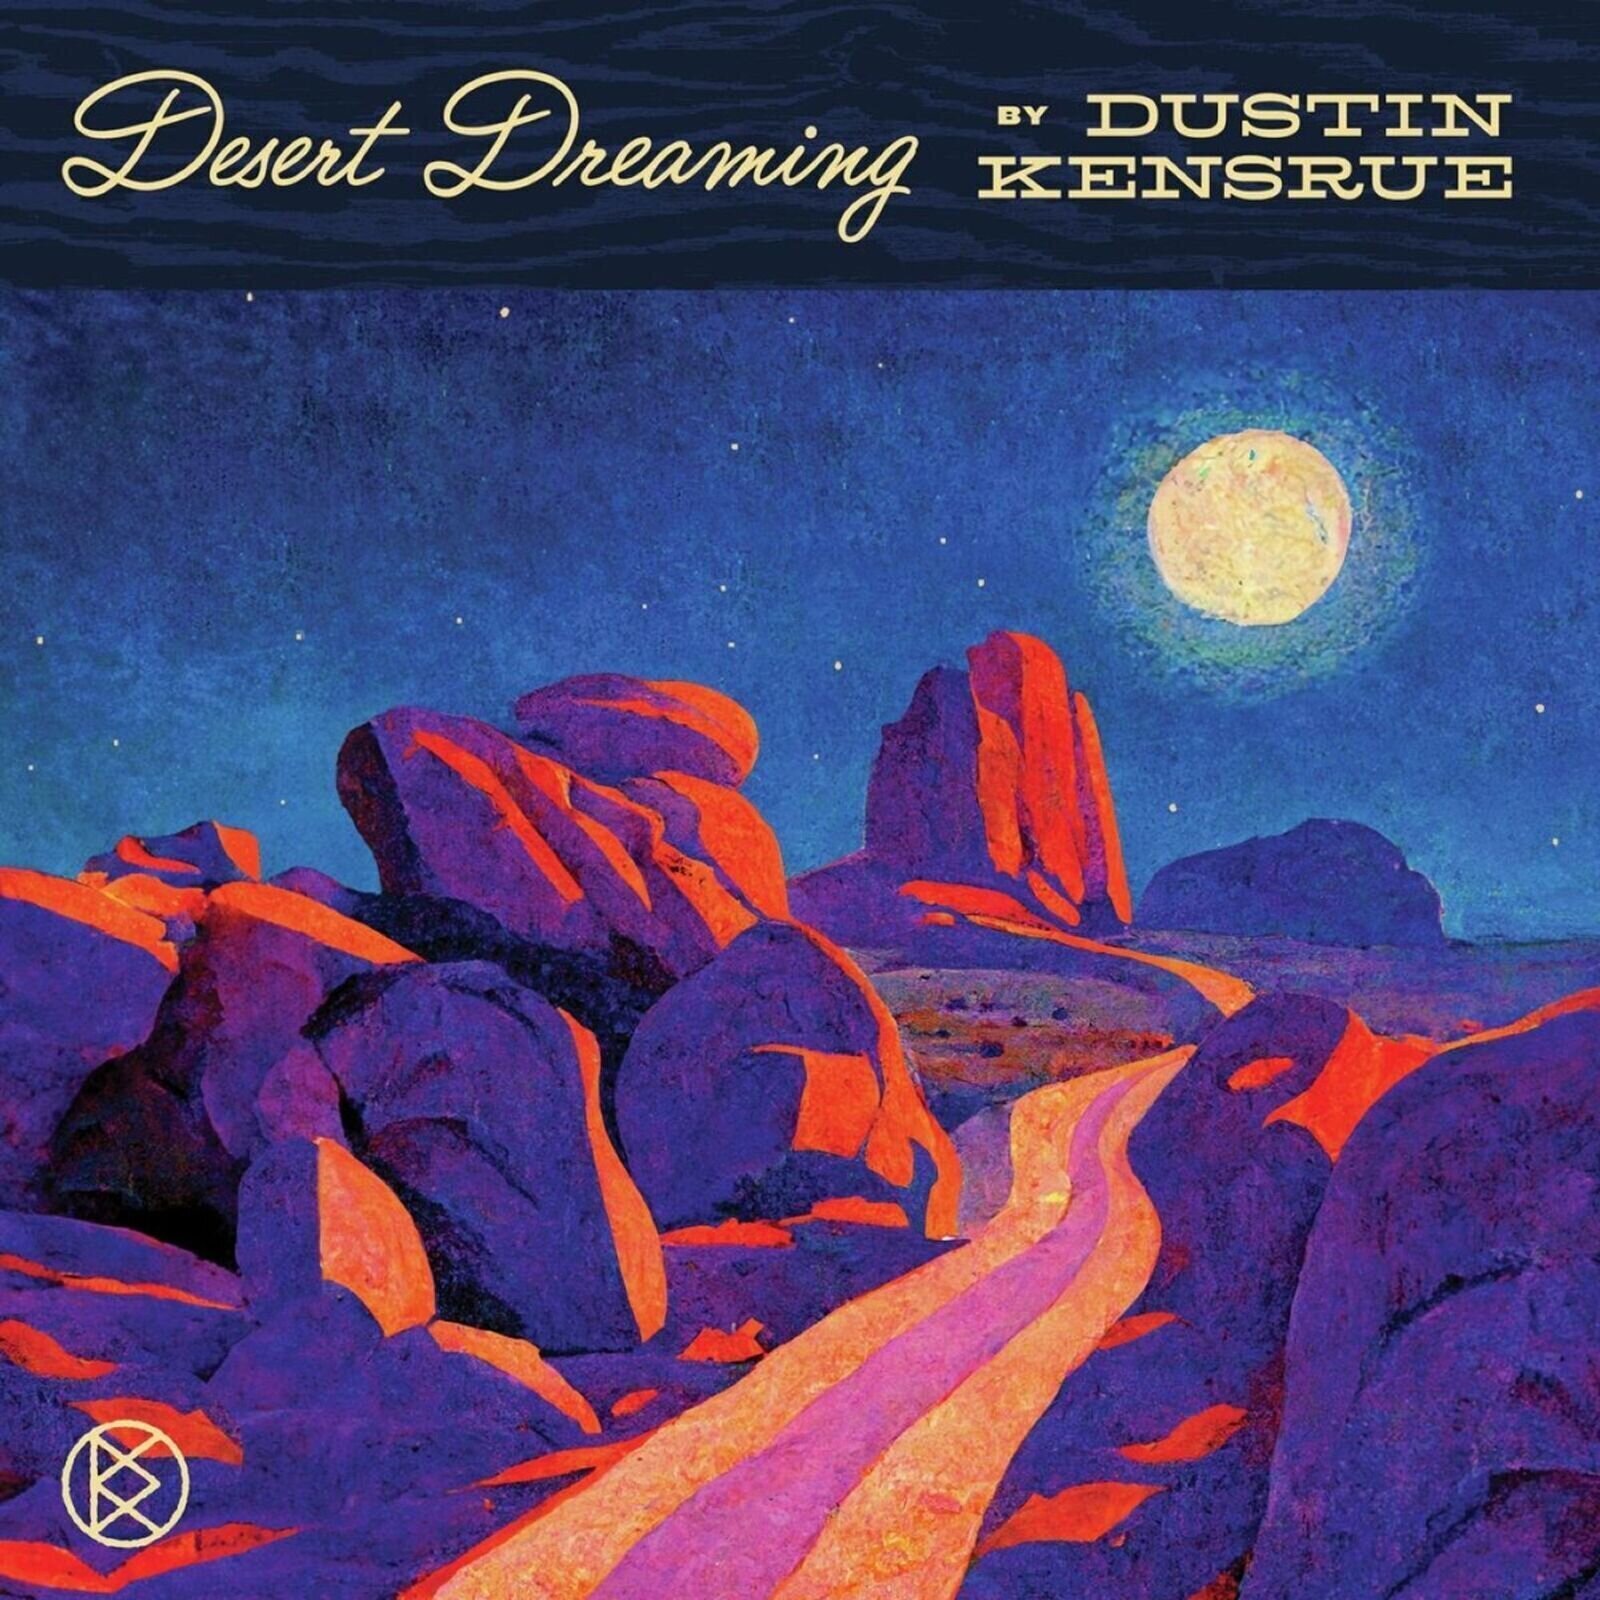 CD de música Dustin Kensrue - Desert Dreaming (CD)